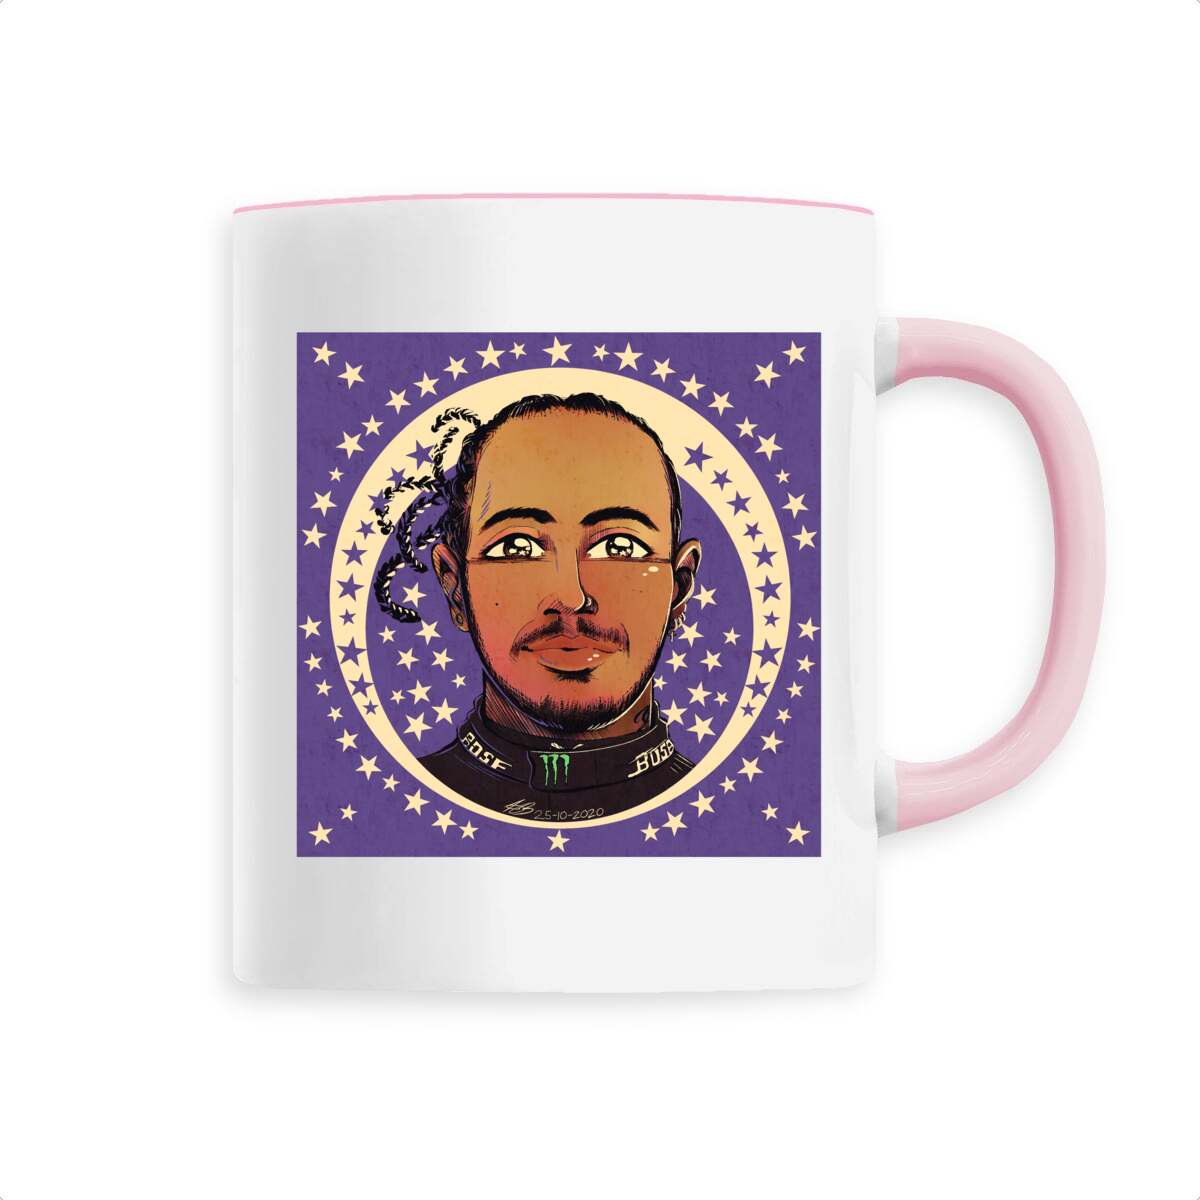 Hamilton - Ceramic mug